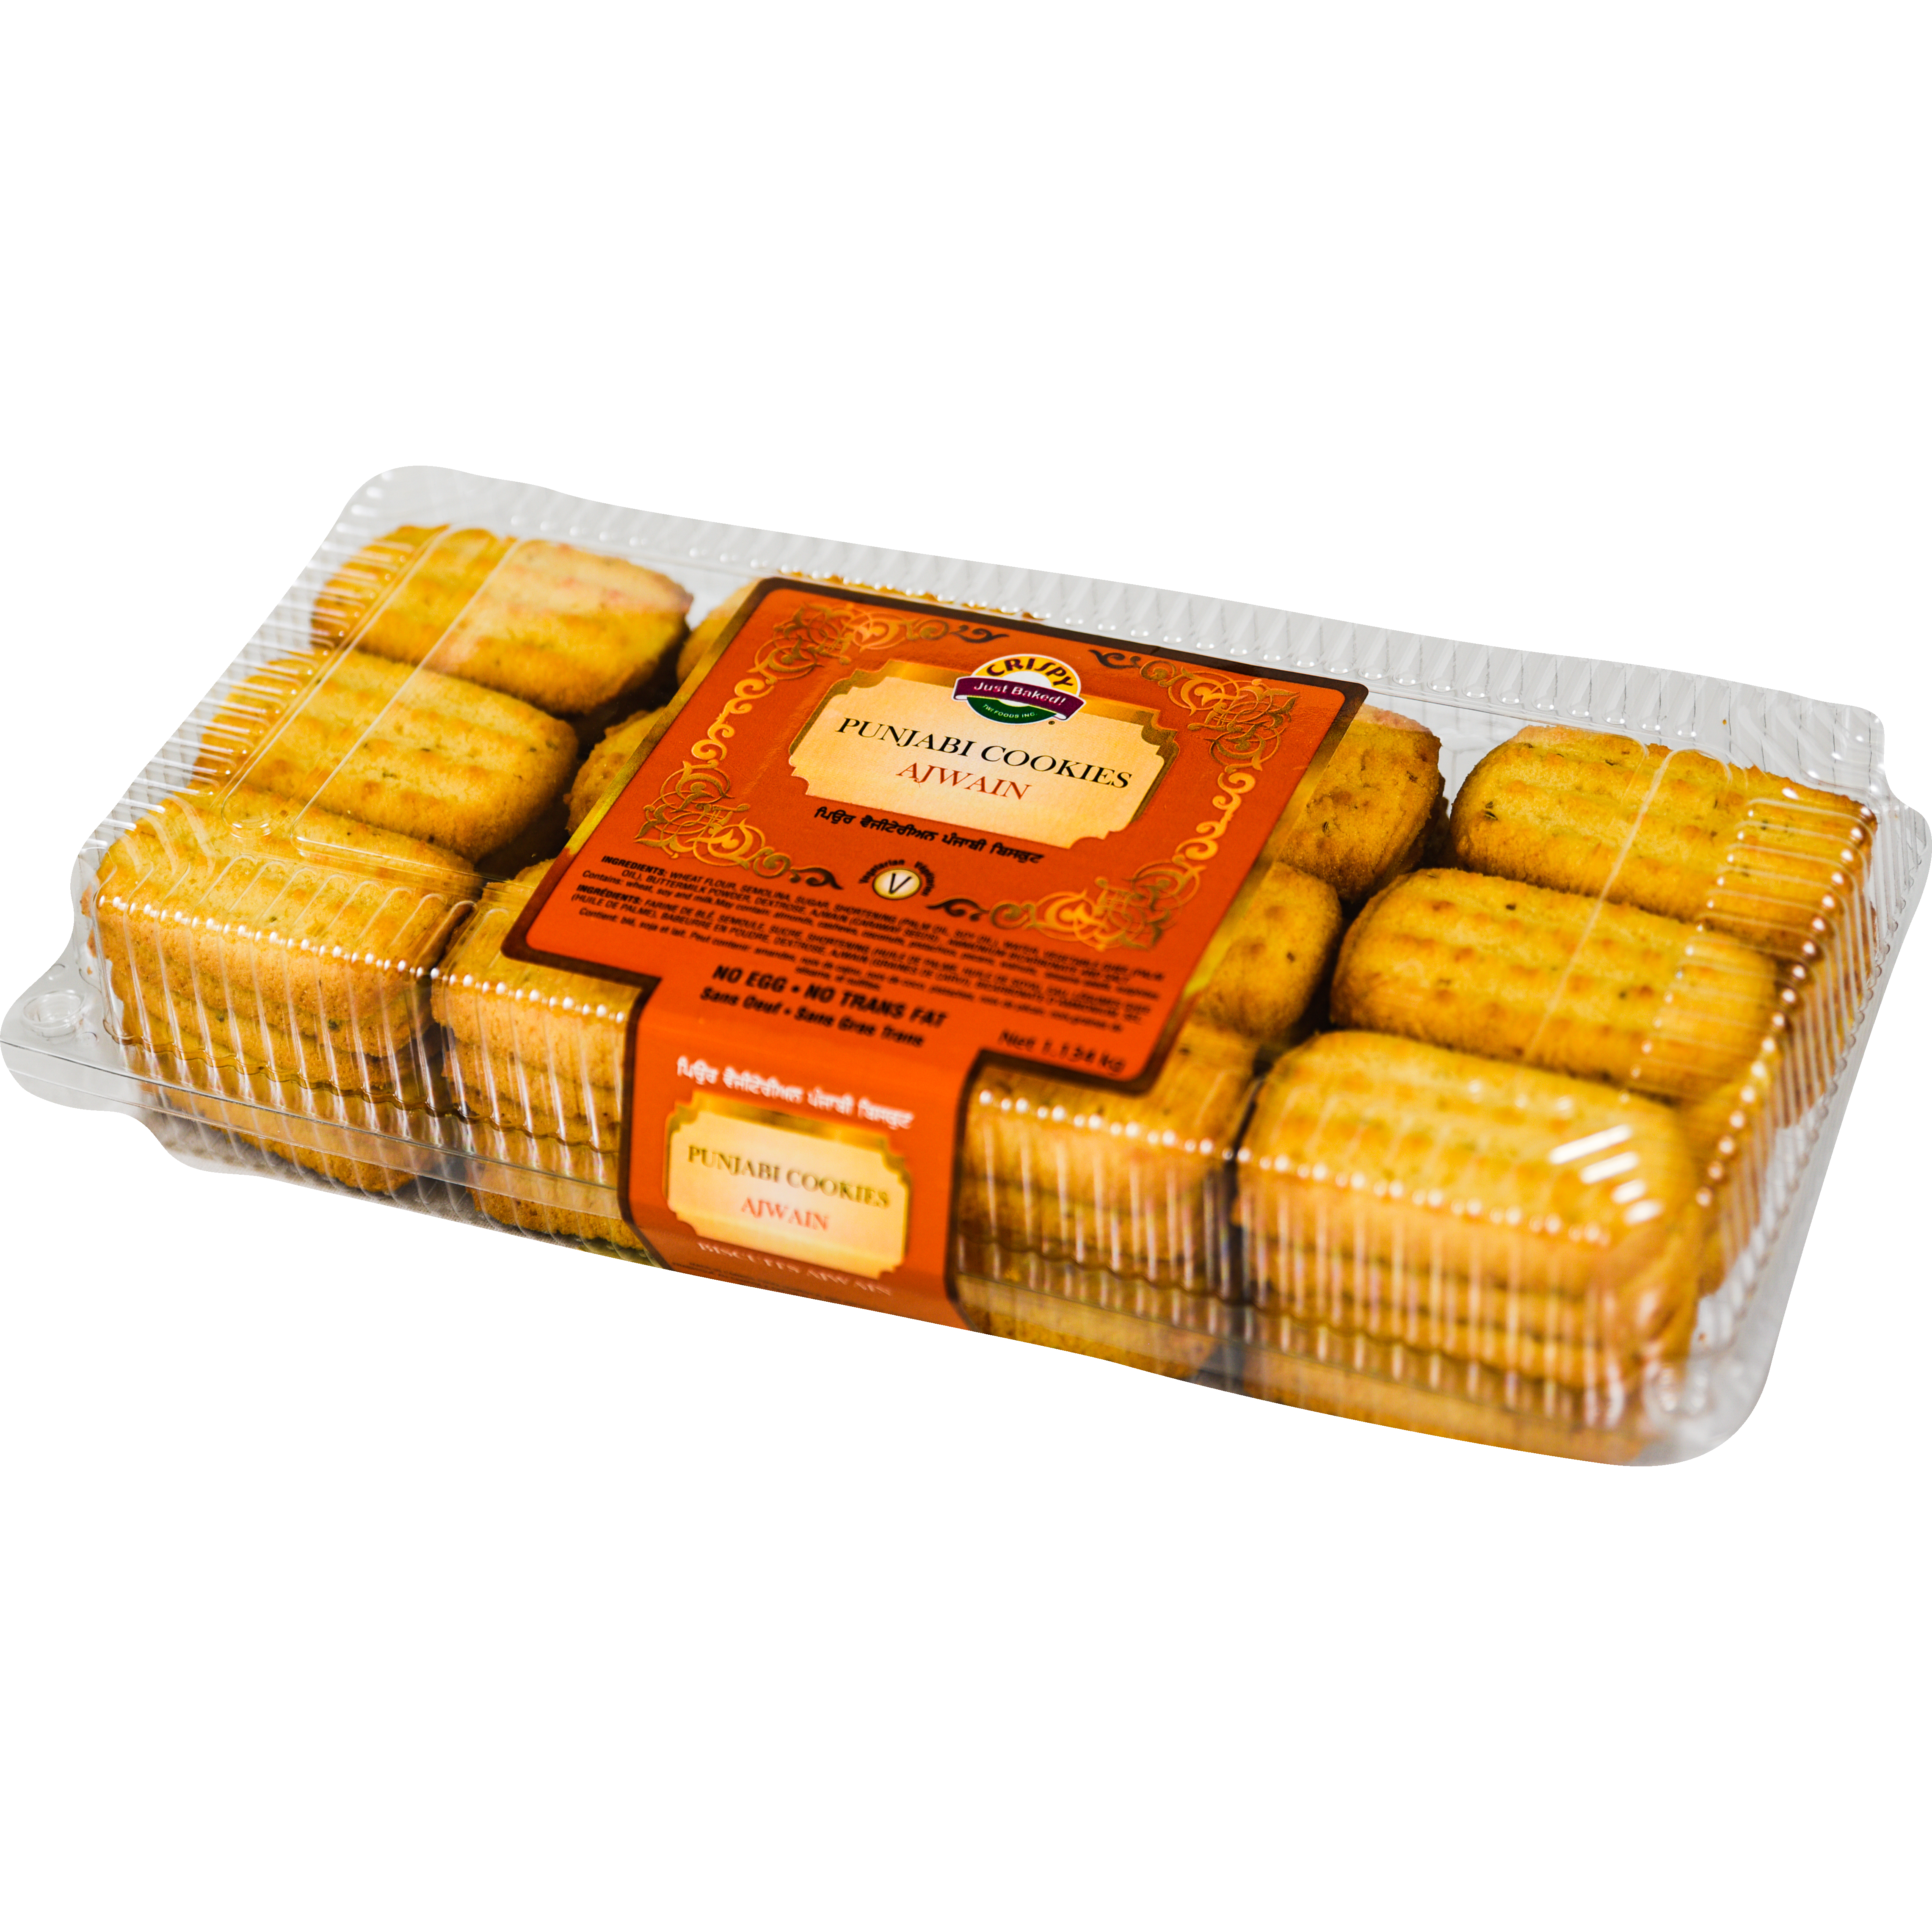 TAG Split Cakes - Orange and Yellow (1.76 oz/50 gm):  